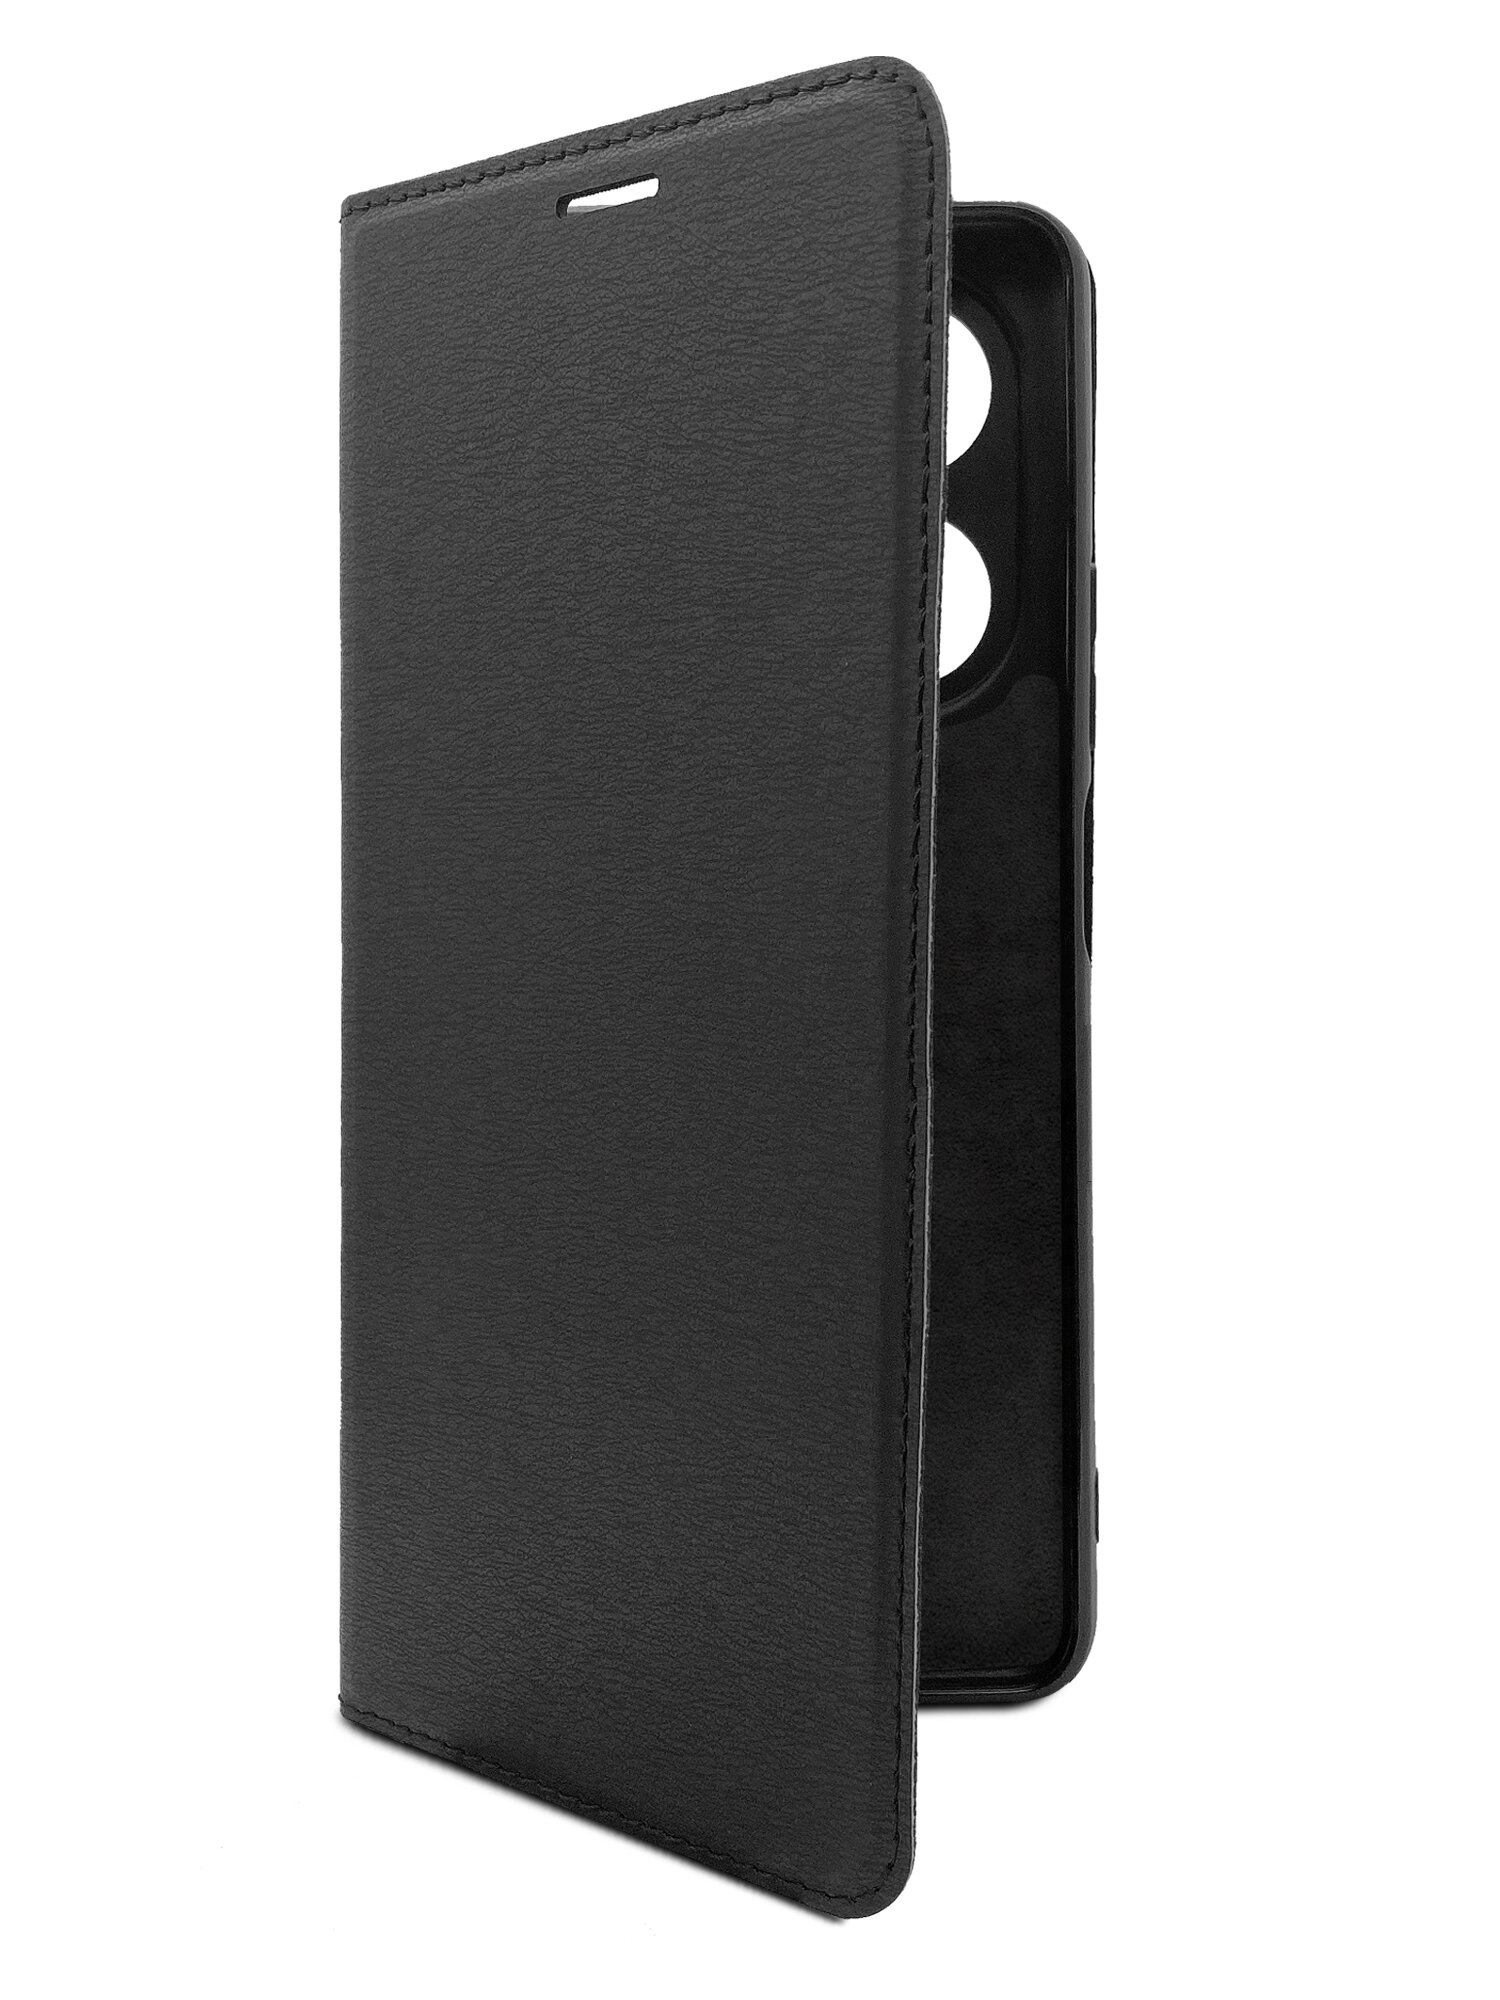 Чехол на Infinix HOT 40 Pro (Инфиникс Хот 40 Про) черный книжка эко-кожа с функцией подставки отделением для карт и магнитами Book case, Brozo